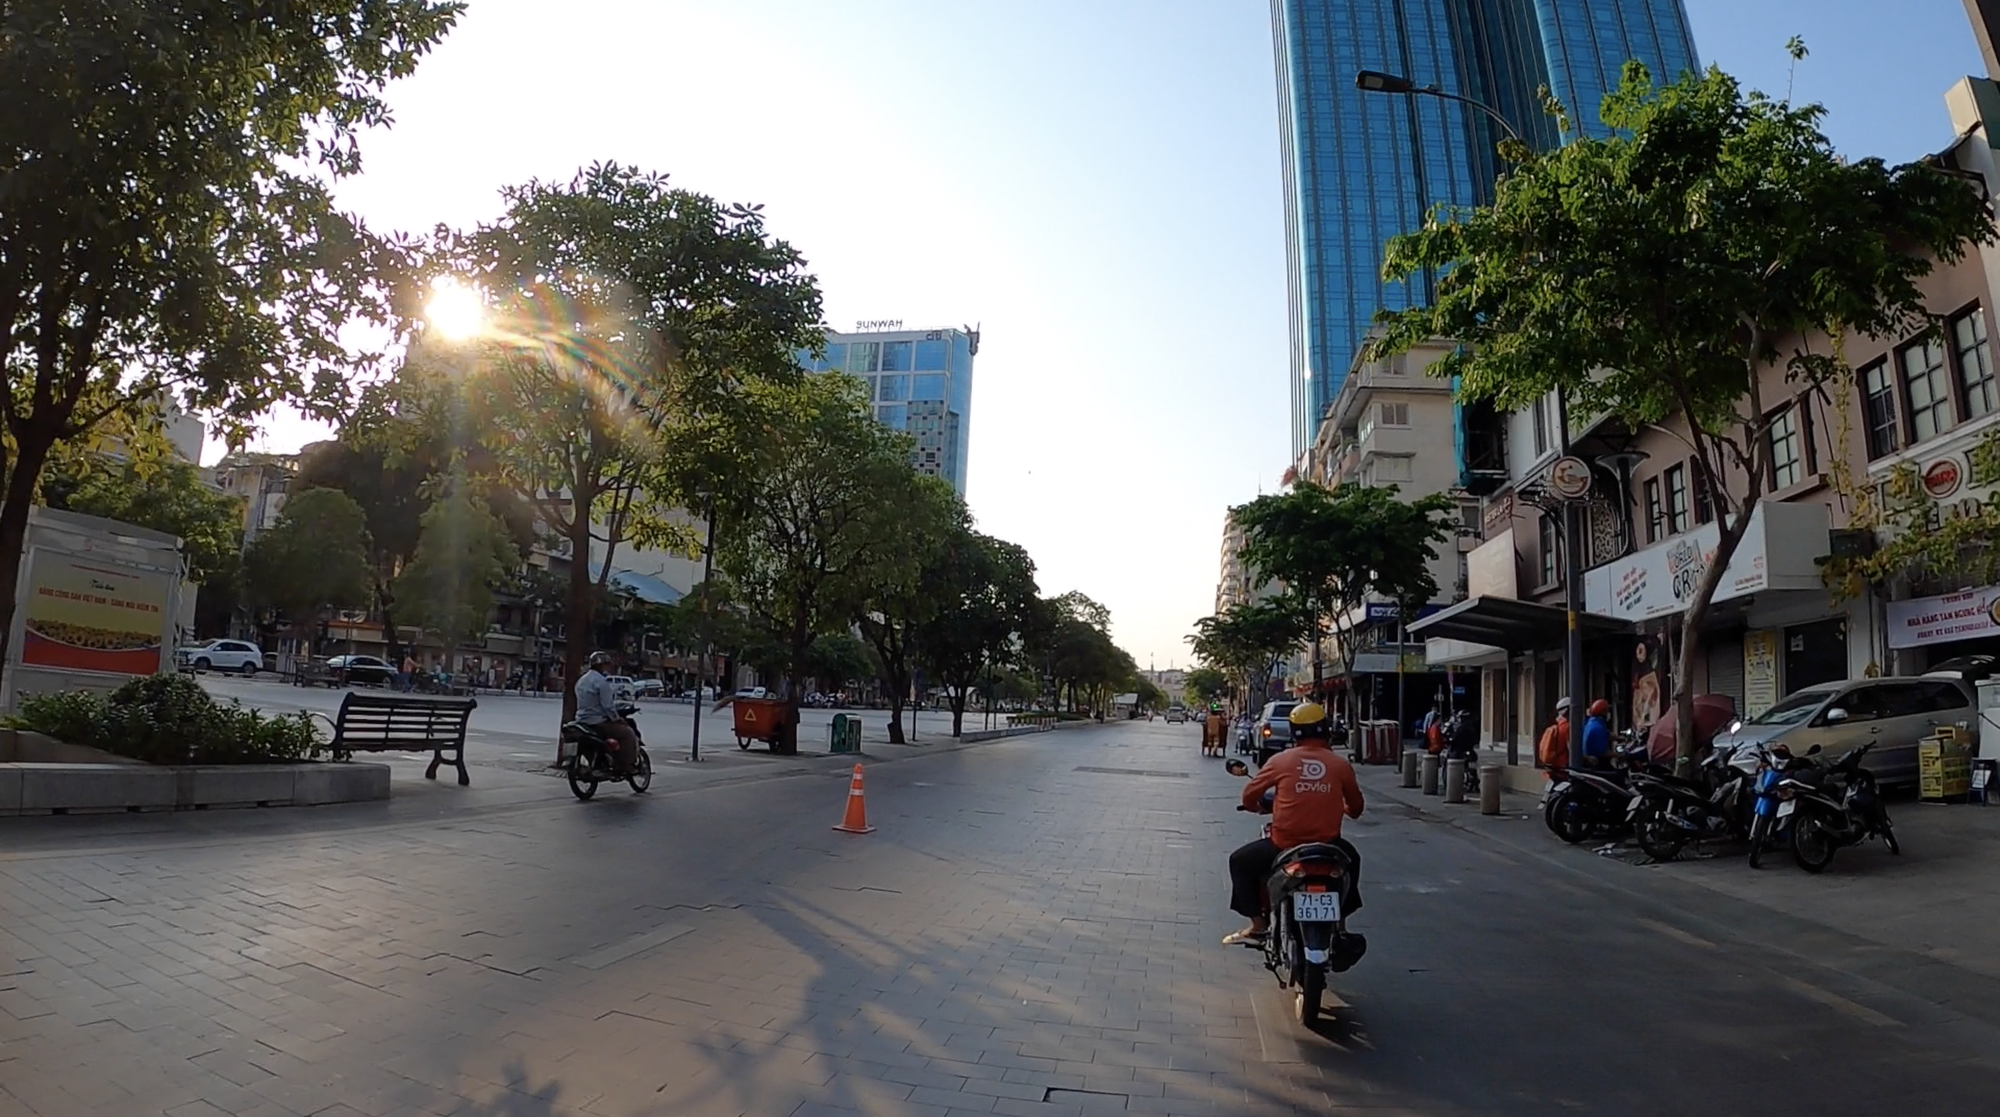 TP HCM: Thành phố Hồ Chí Minh là nơi tập trung những tòa nhà cao tầng, đường phố sầm uất và những người dân năng động. Bức ảnh này sẽ giúp bạn cảm nhận được sự sôi động và đặc sắc của TP HCM.